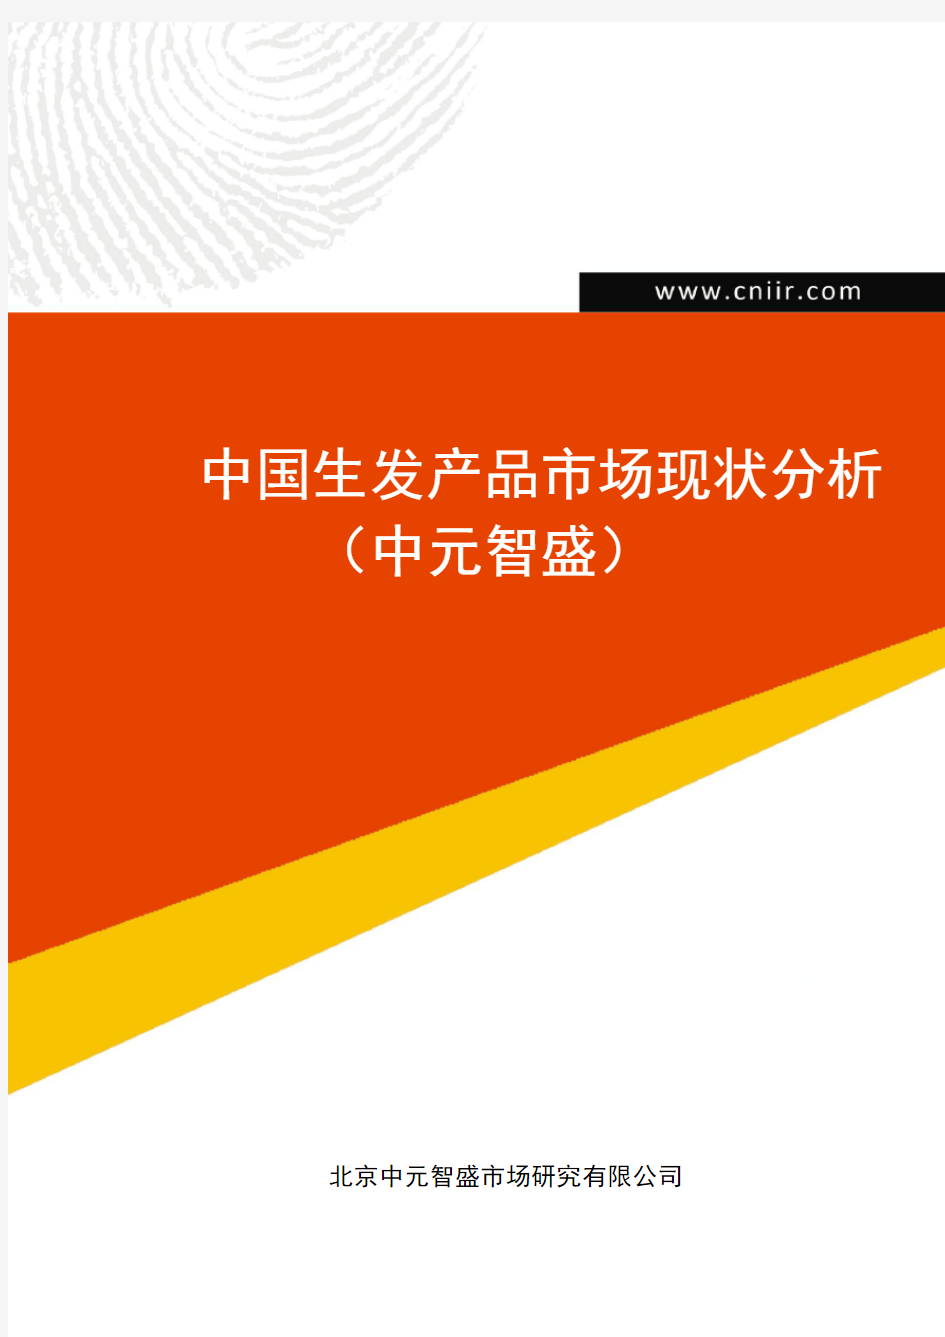 中国生发产品市场现状分析(中元智盛)